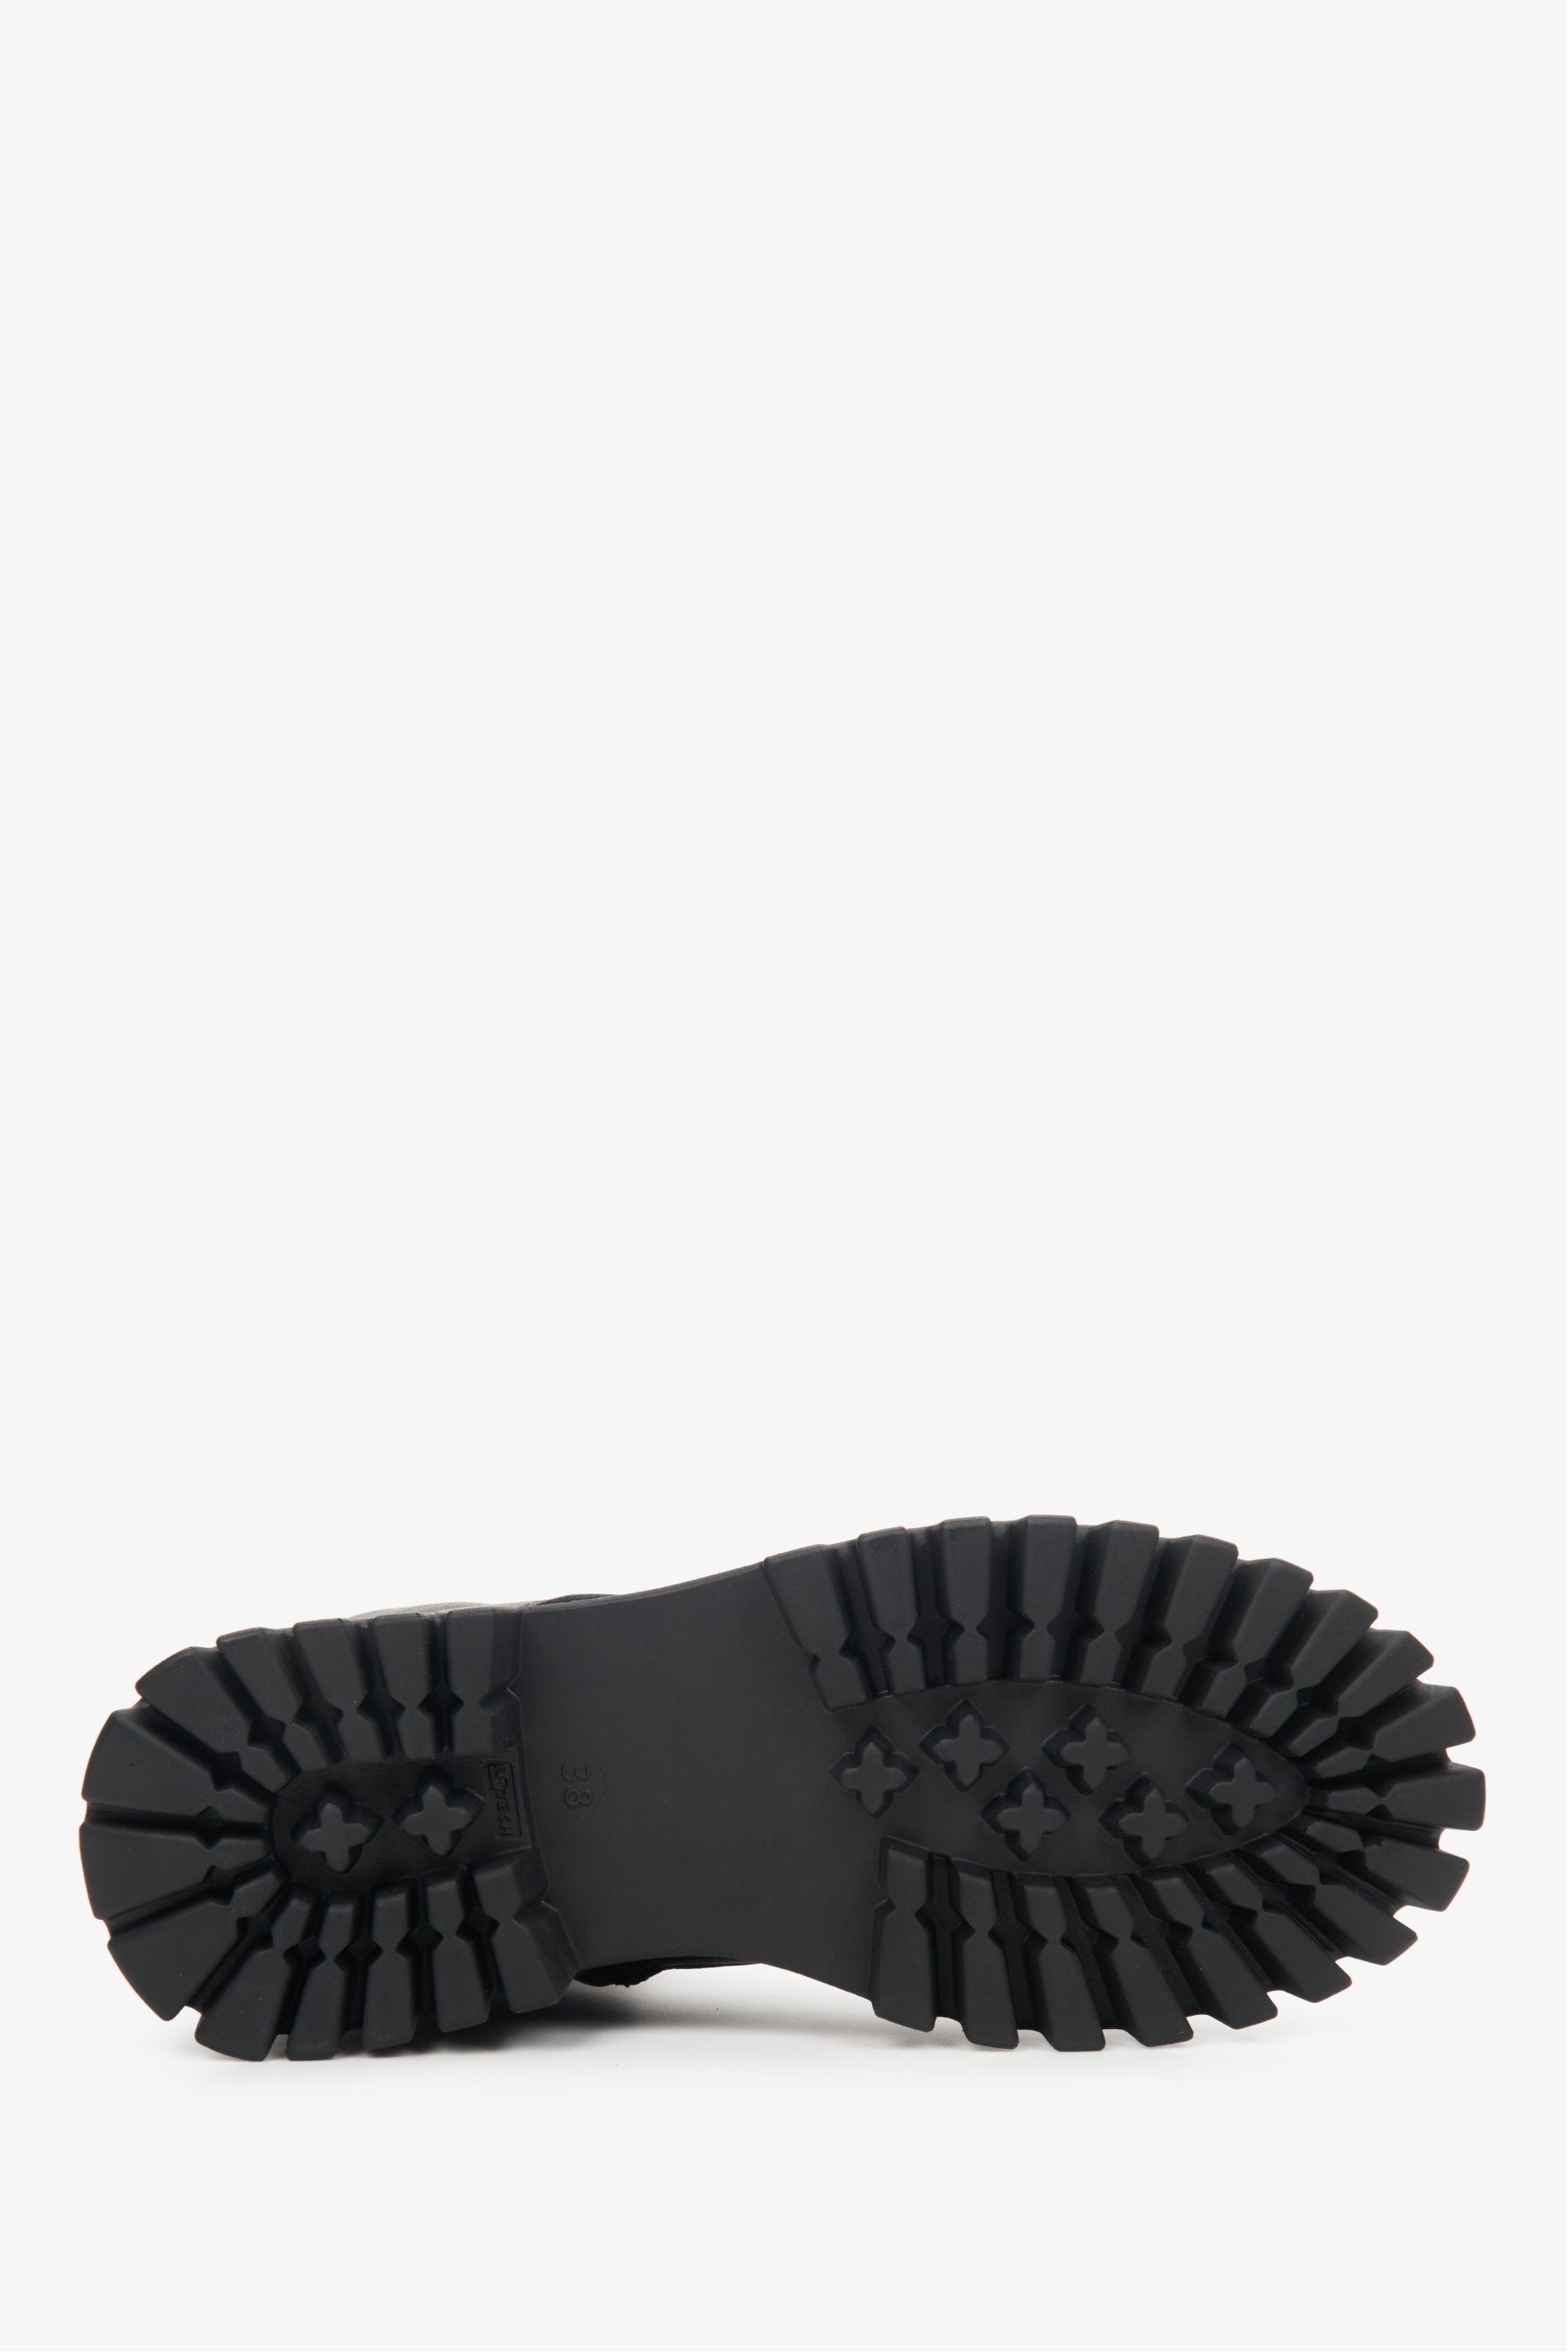 Sznurowane, wysokie botki damskie w kolorze czarnym ze skóry naturalnej - zbliżenie na podeszwę buta.